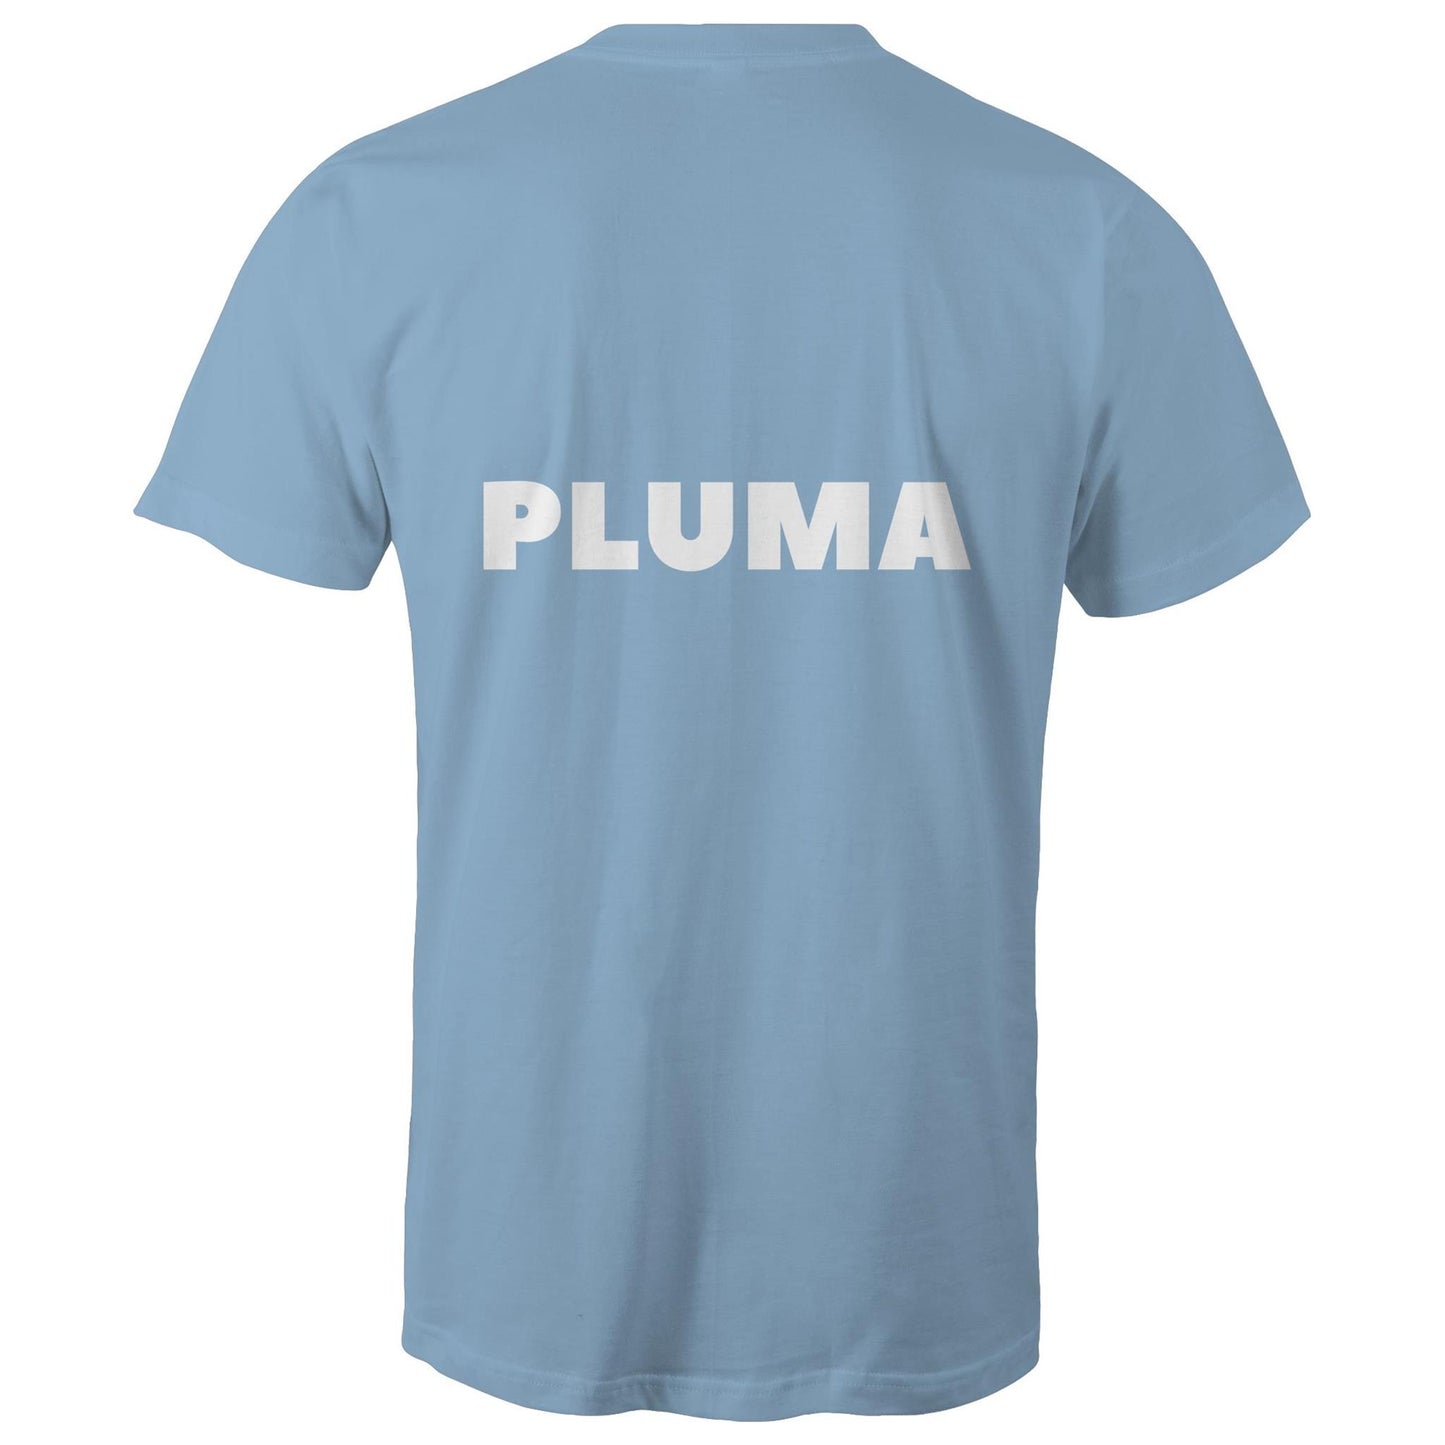 PLUMA - Mens T-Shirt